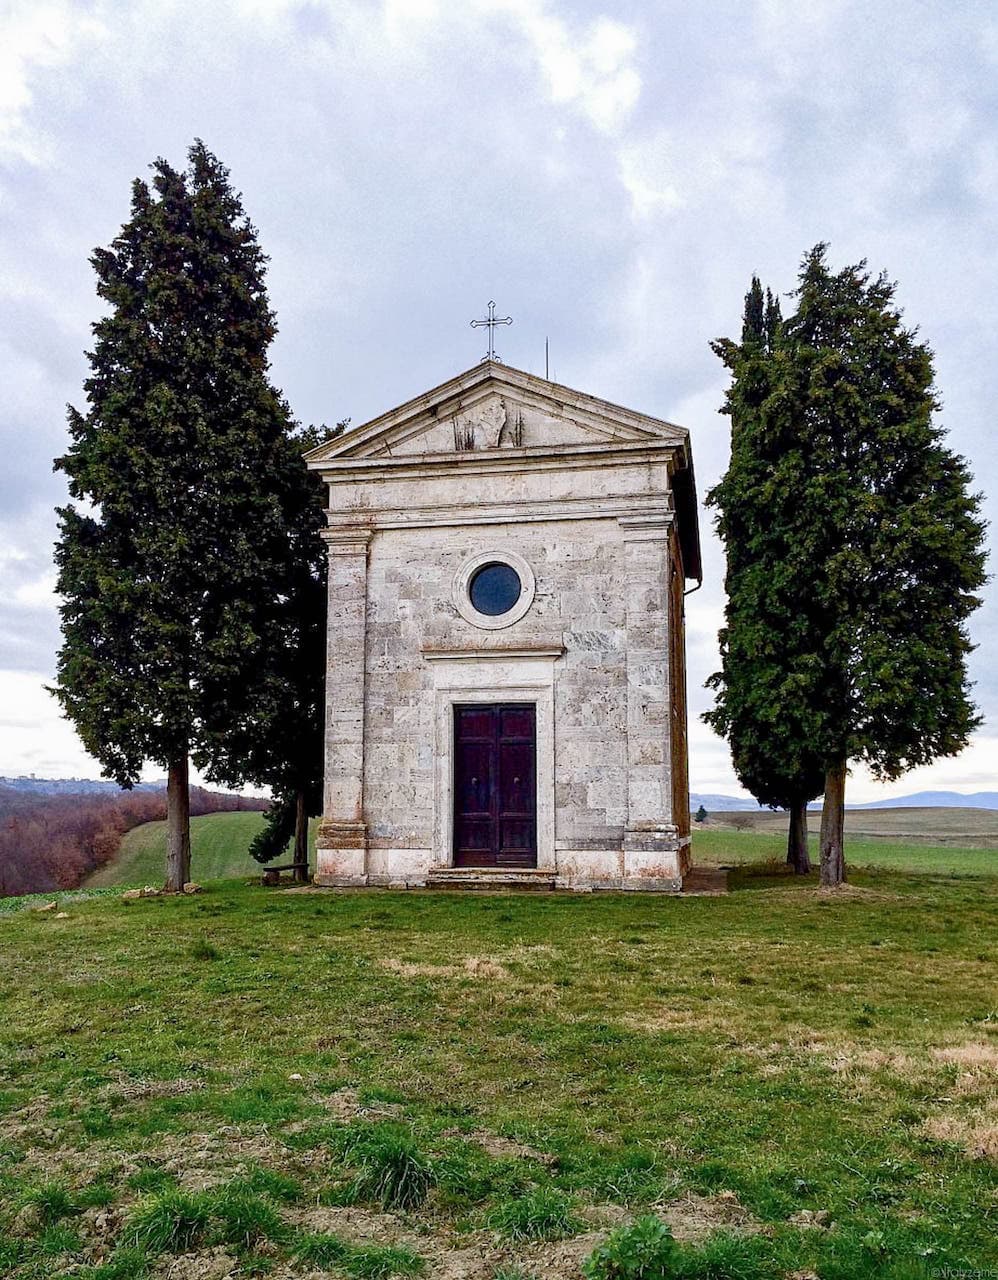 Cappella della Madonna di Vitaleta